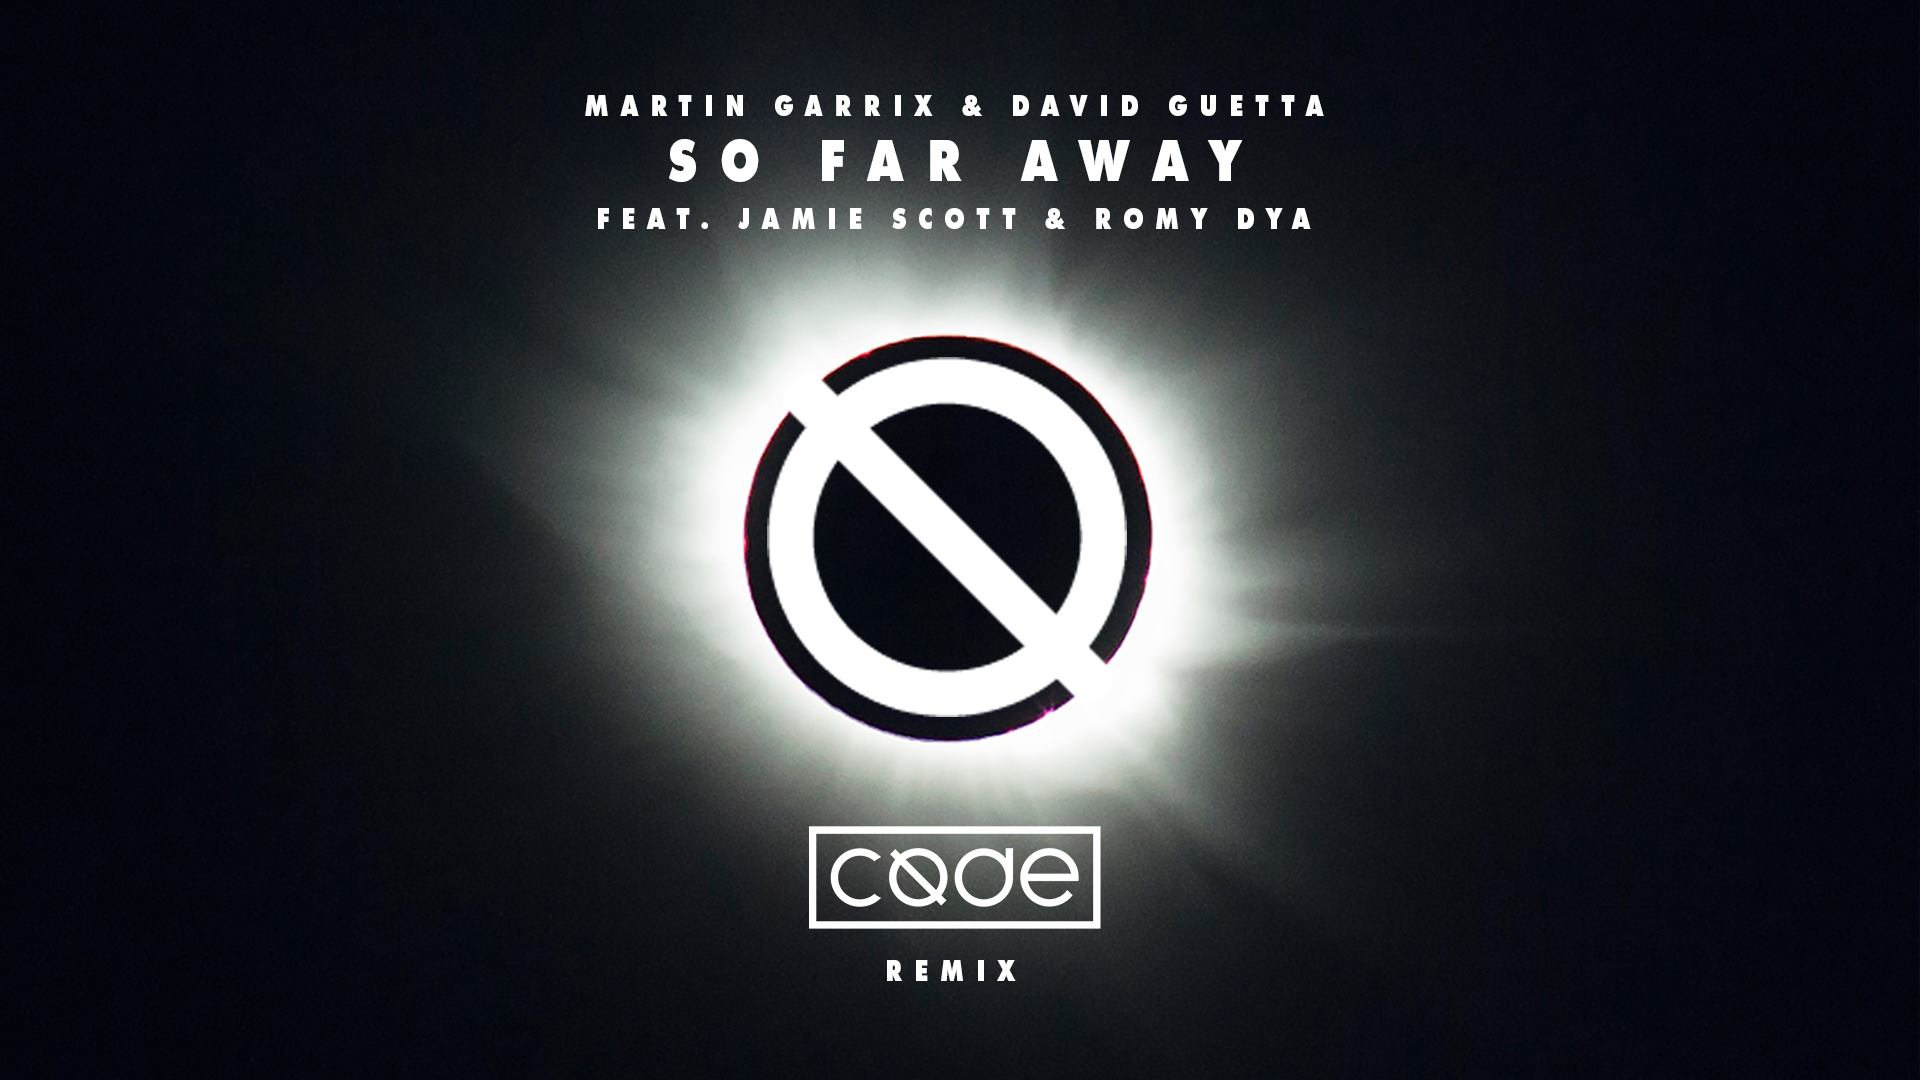 Martin Garrix & David Guetta Far Away feat. Jamie Scott & Romy Dya (CØDE Remix) by CØDE download on ToneDen